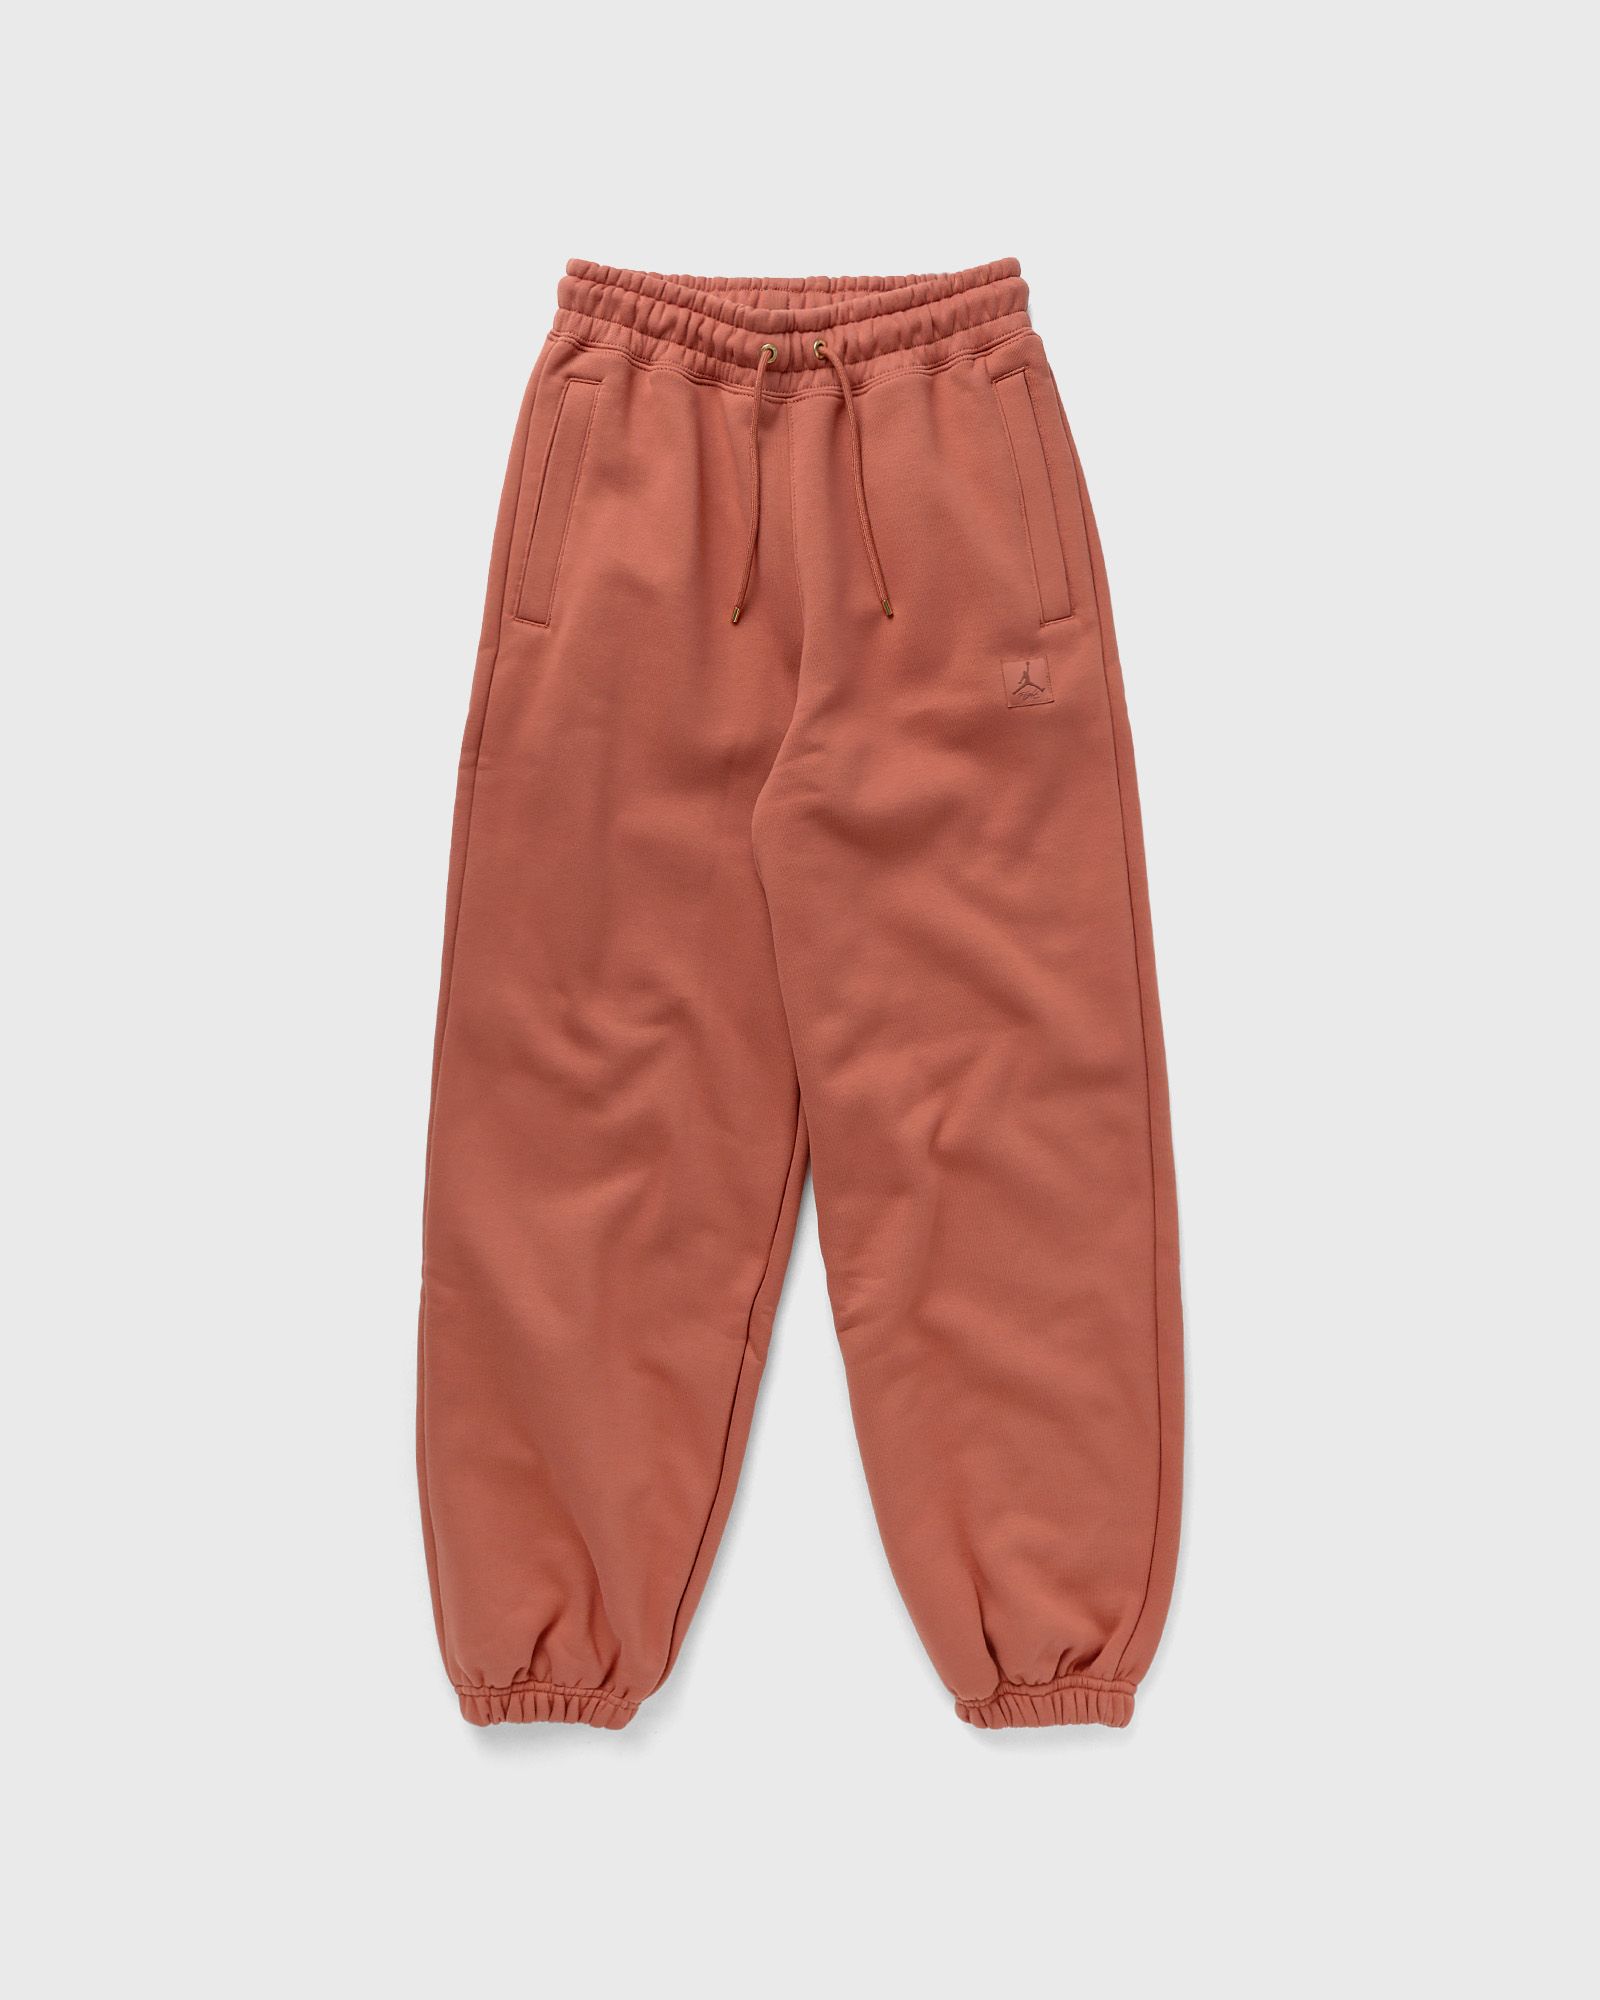 Jordan - wmns flight fleece pants women sweatpants orange in größe:s